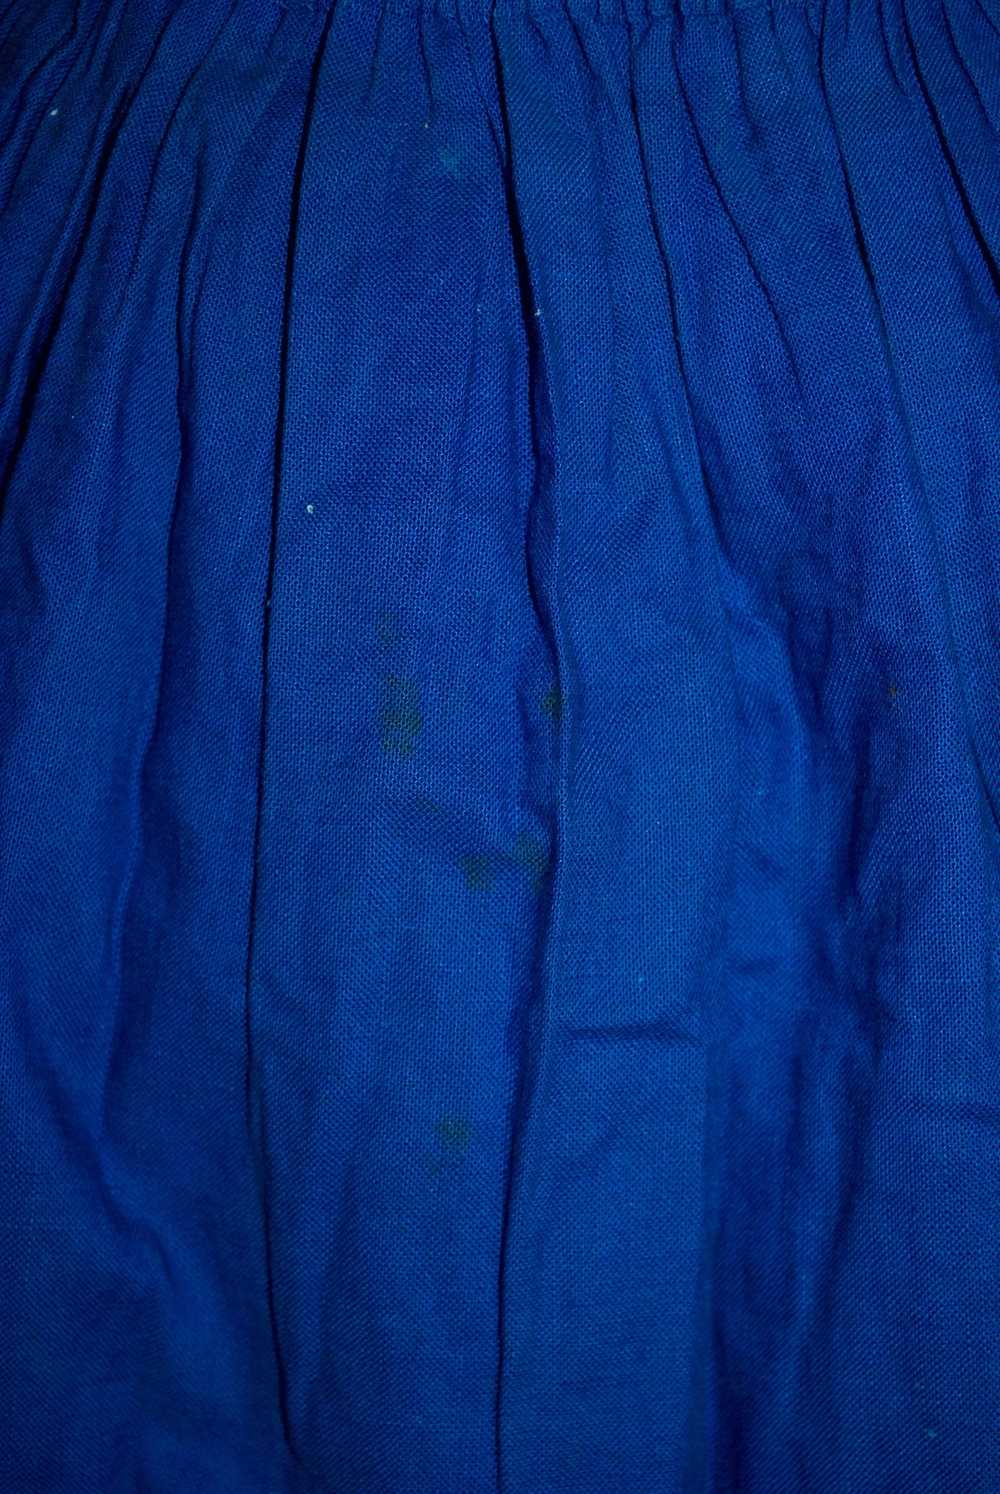 Original Vintage 1950's Blue Skirt Folk Decoration - image 4